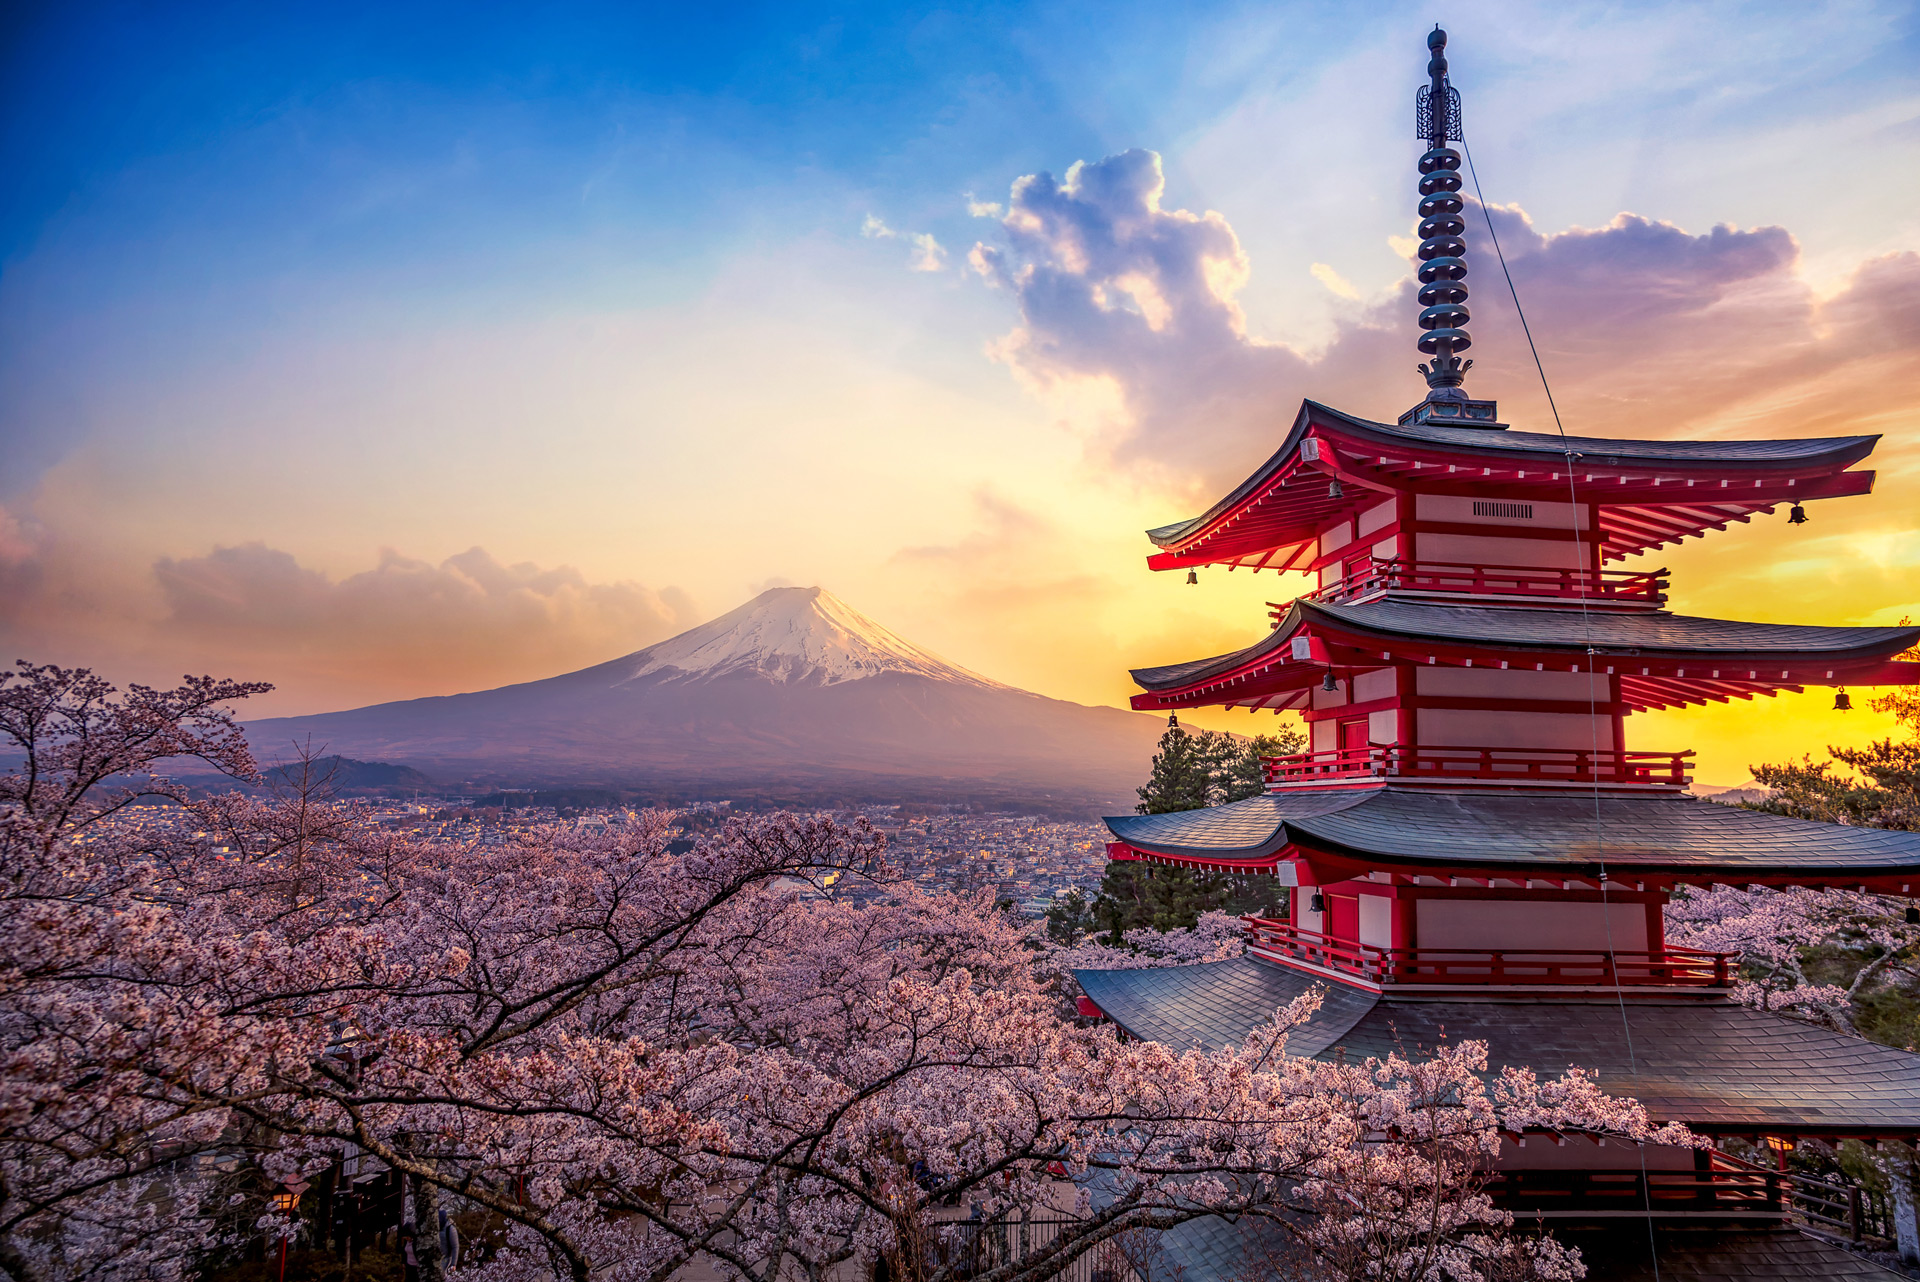 คำแนะนำเกี่ยวกับเทศกาล Tokyo Sakura Garden Spring Festival ในญี่ปุ่น